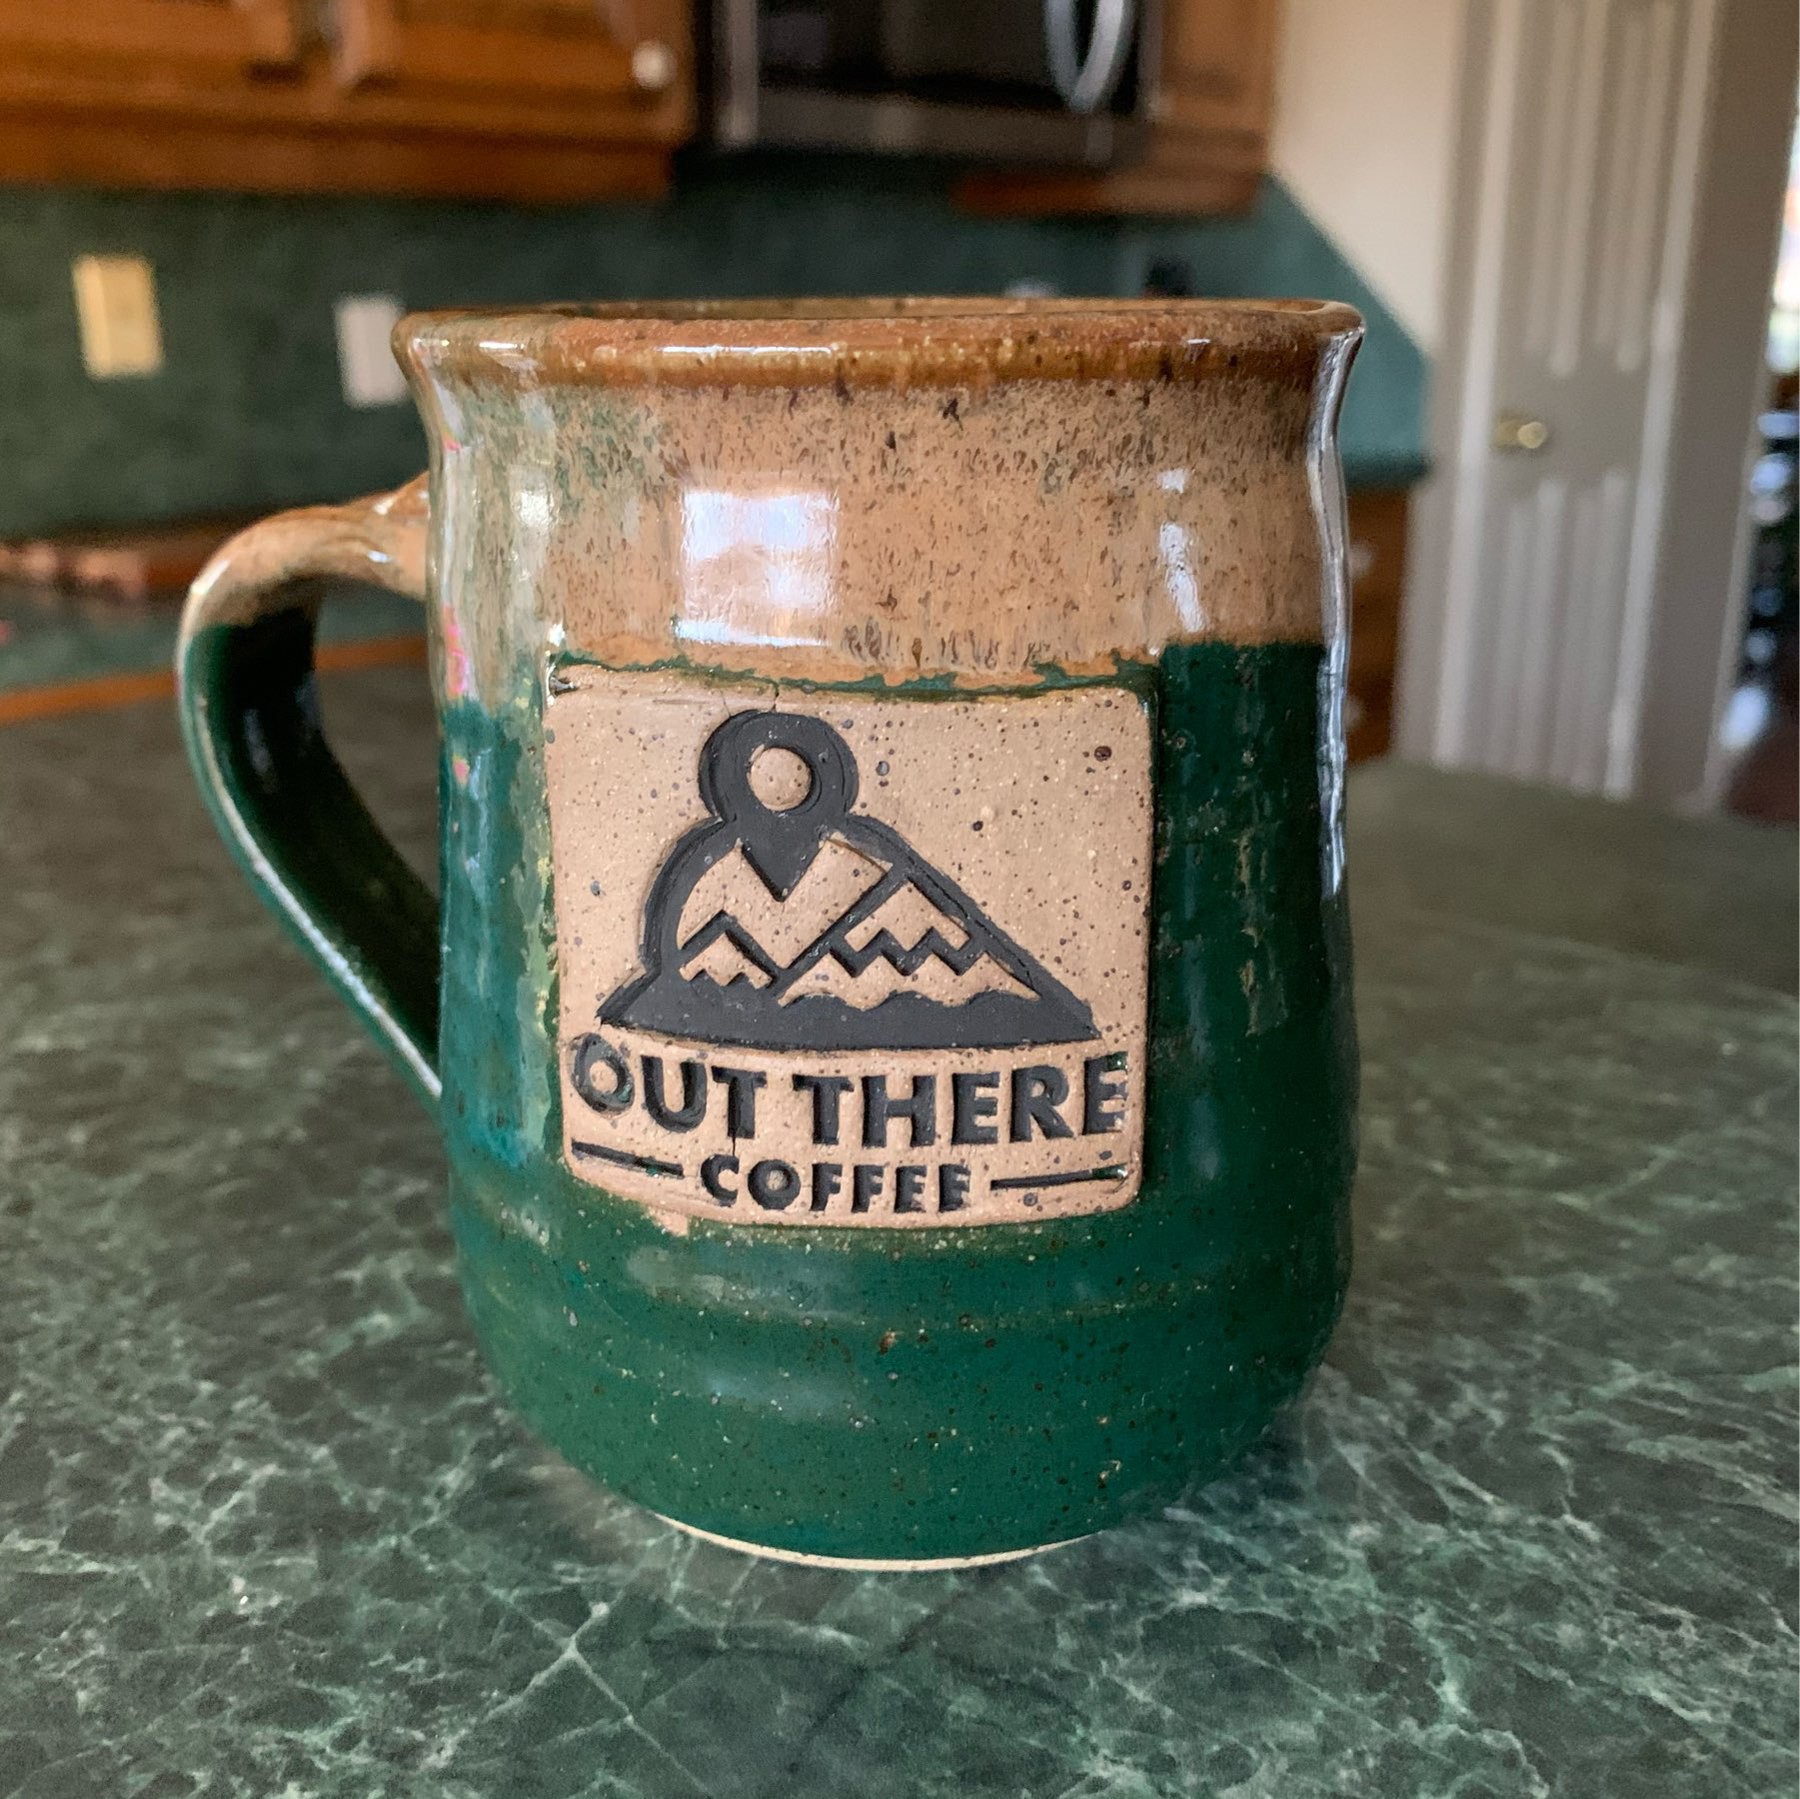 Pottery coffee mug on a counter